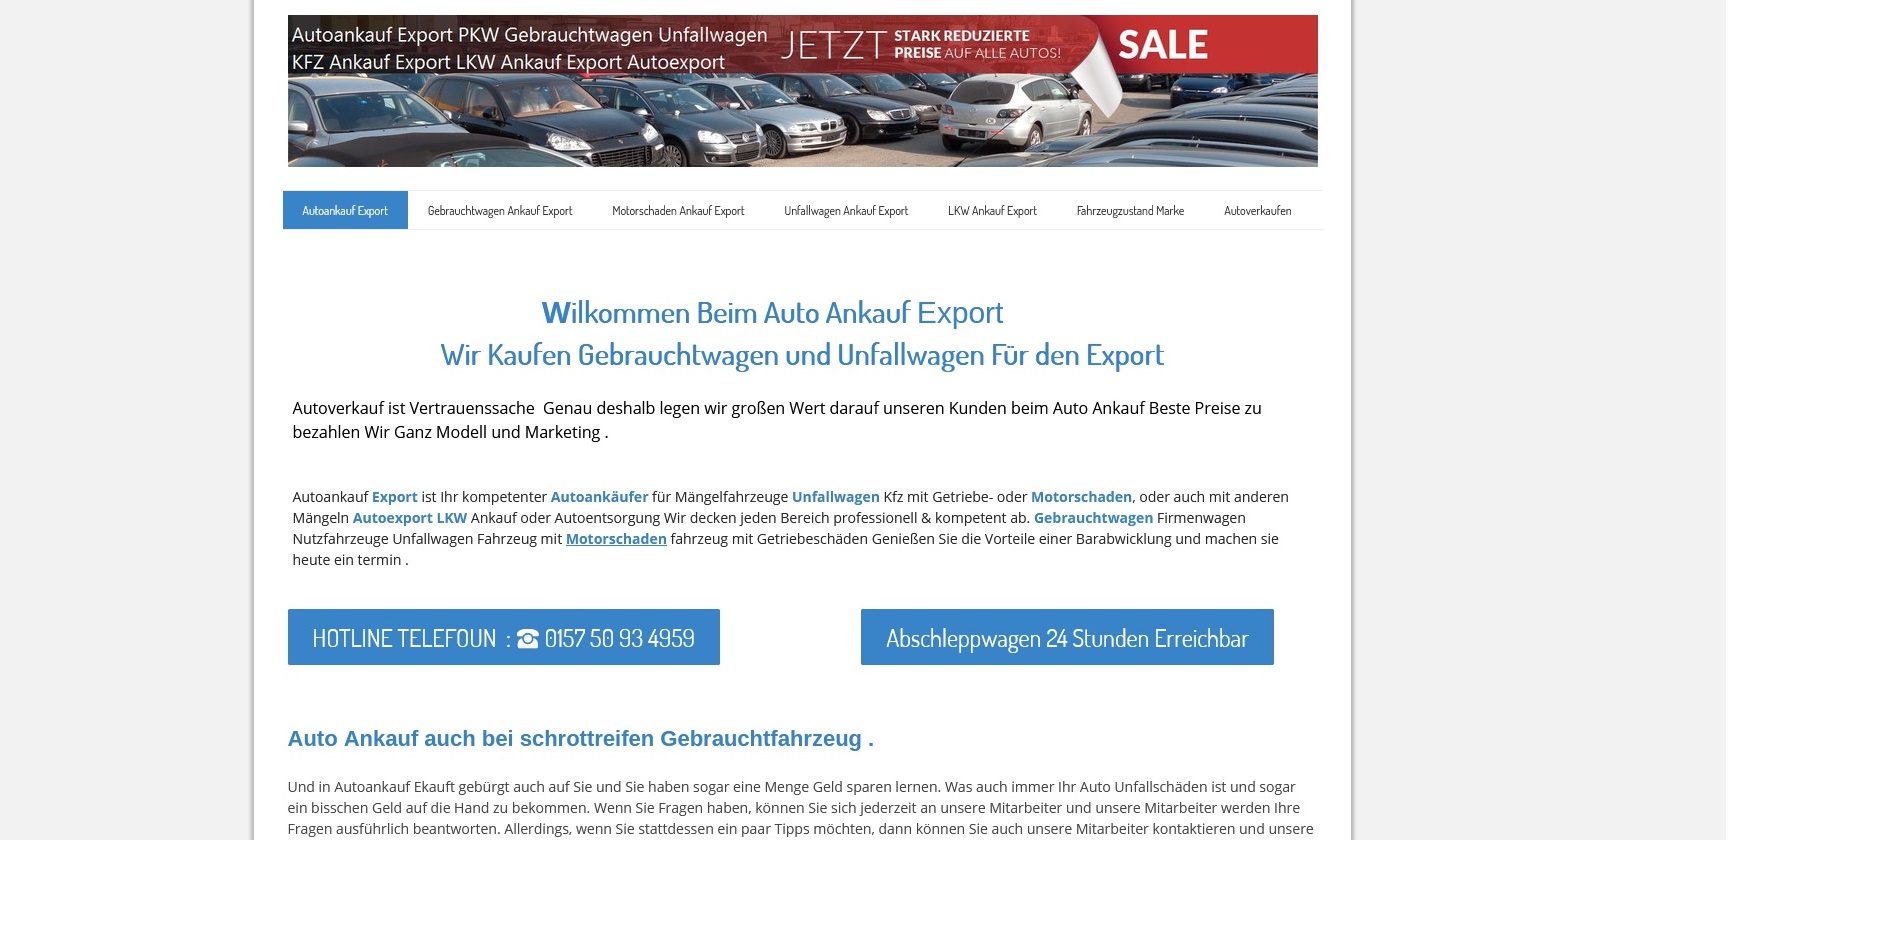 Kfz-Ankauf-export.de | Autoankauf Chemnitz | Autoankauf Export Chemnitz